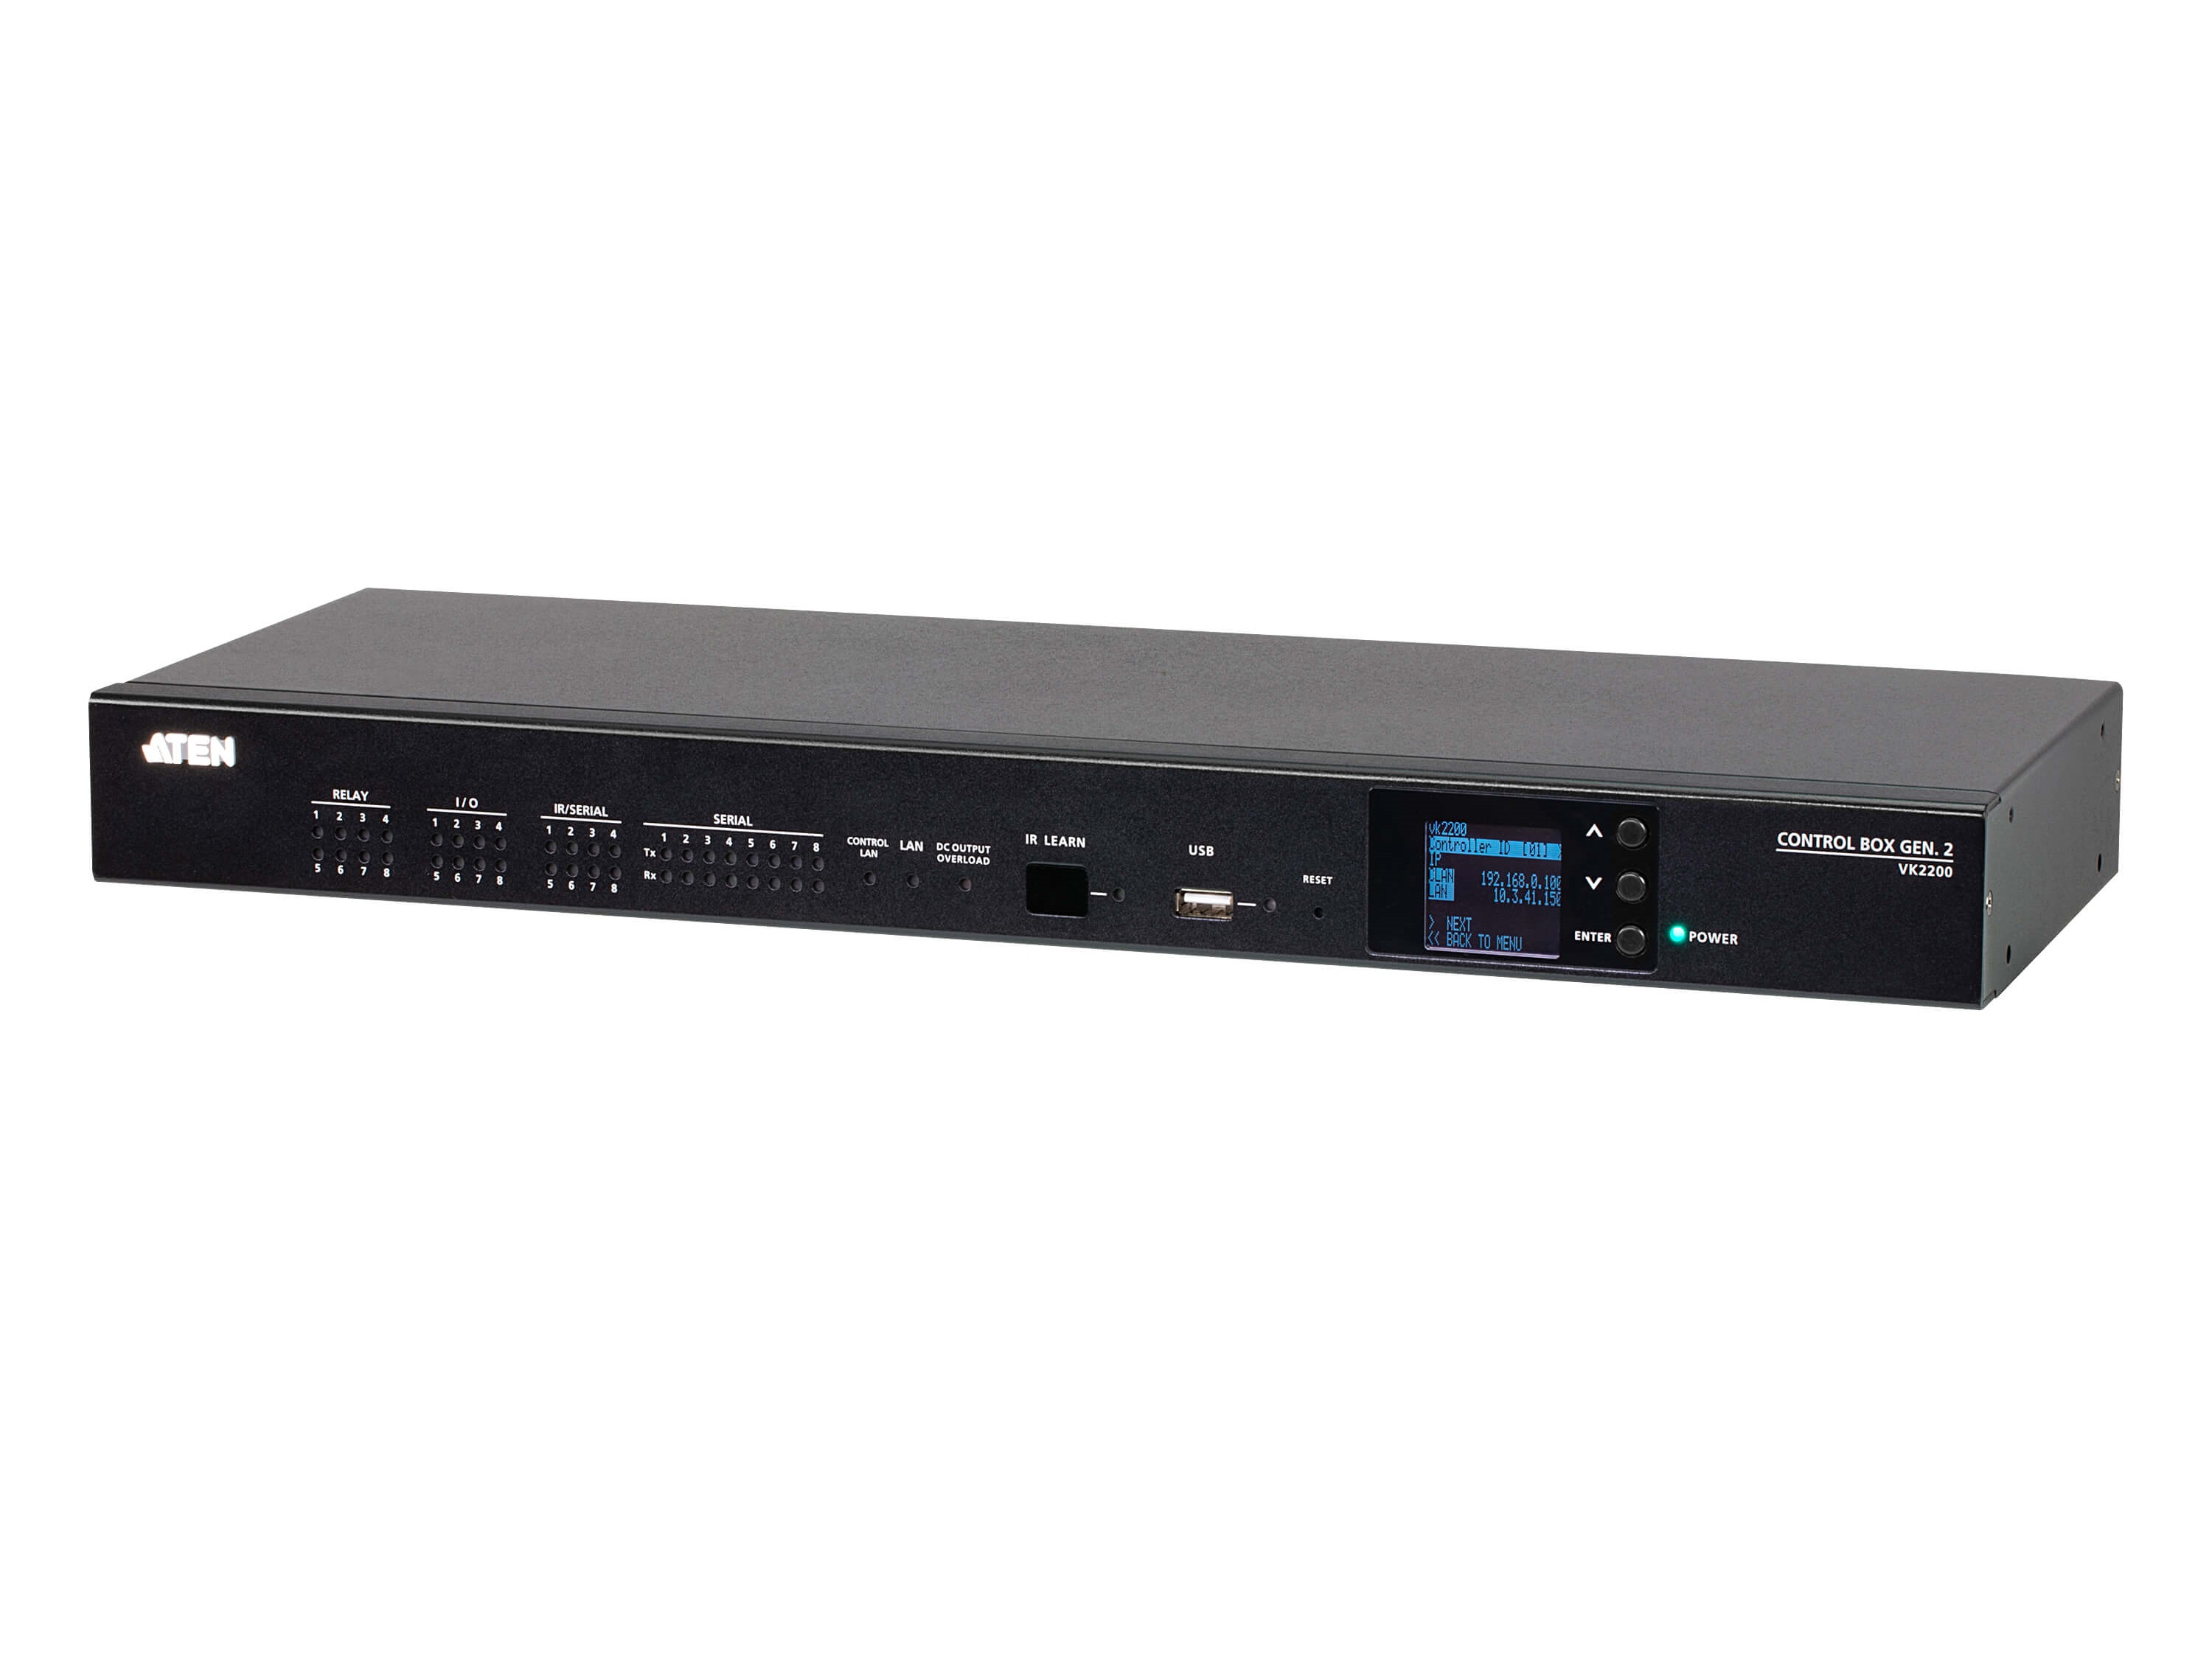 Aten VK2200 ATEN Control System/Control Box Gen/2 with Dual LAN